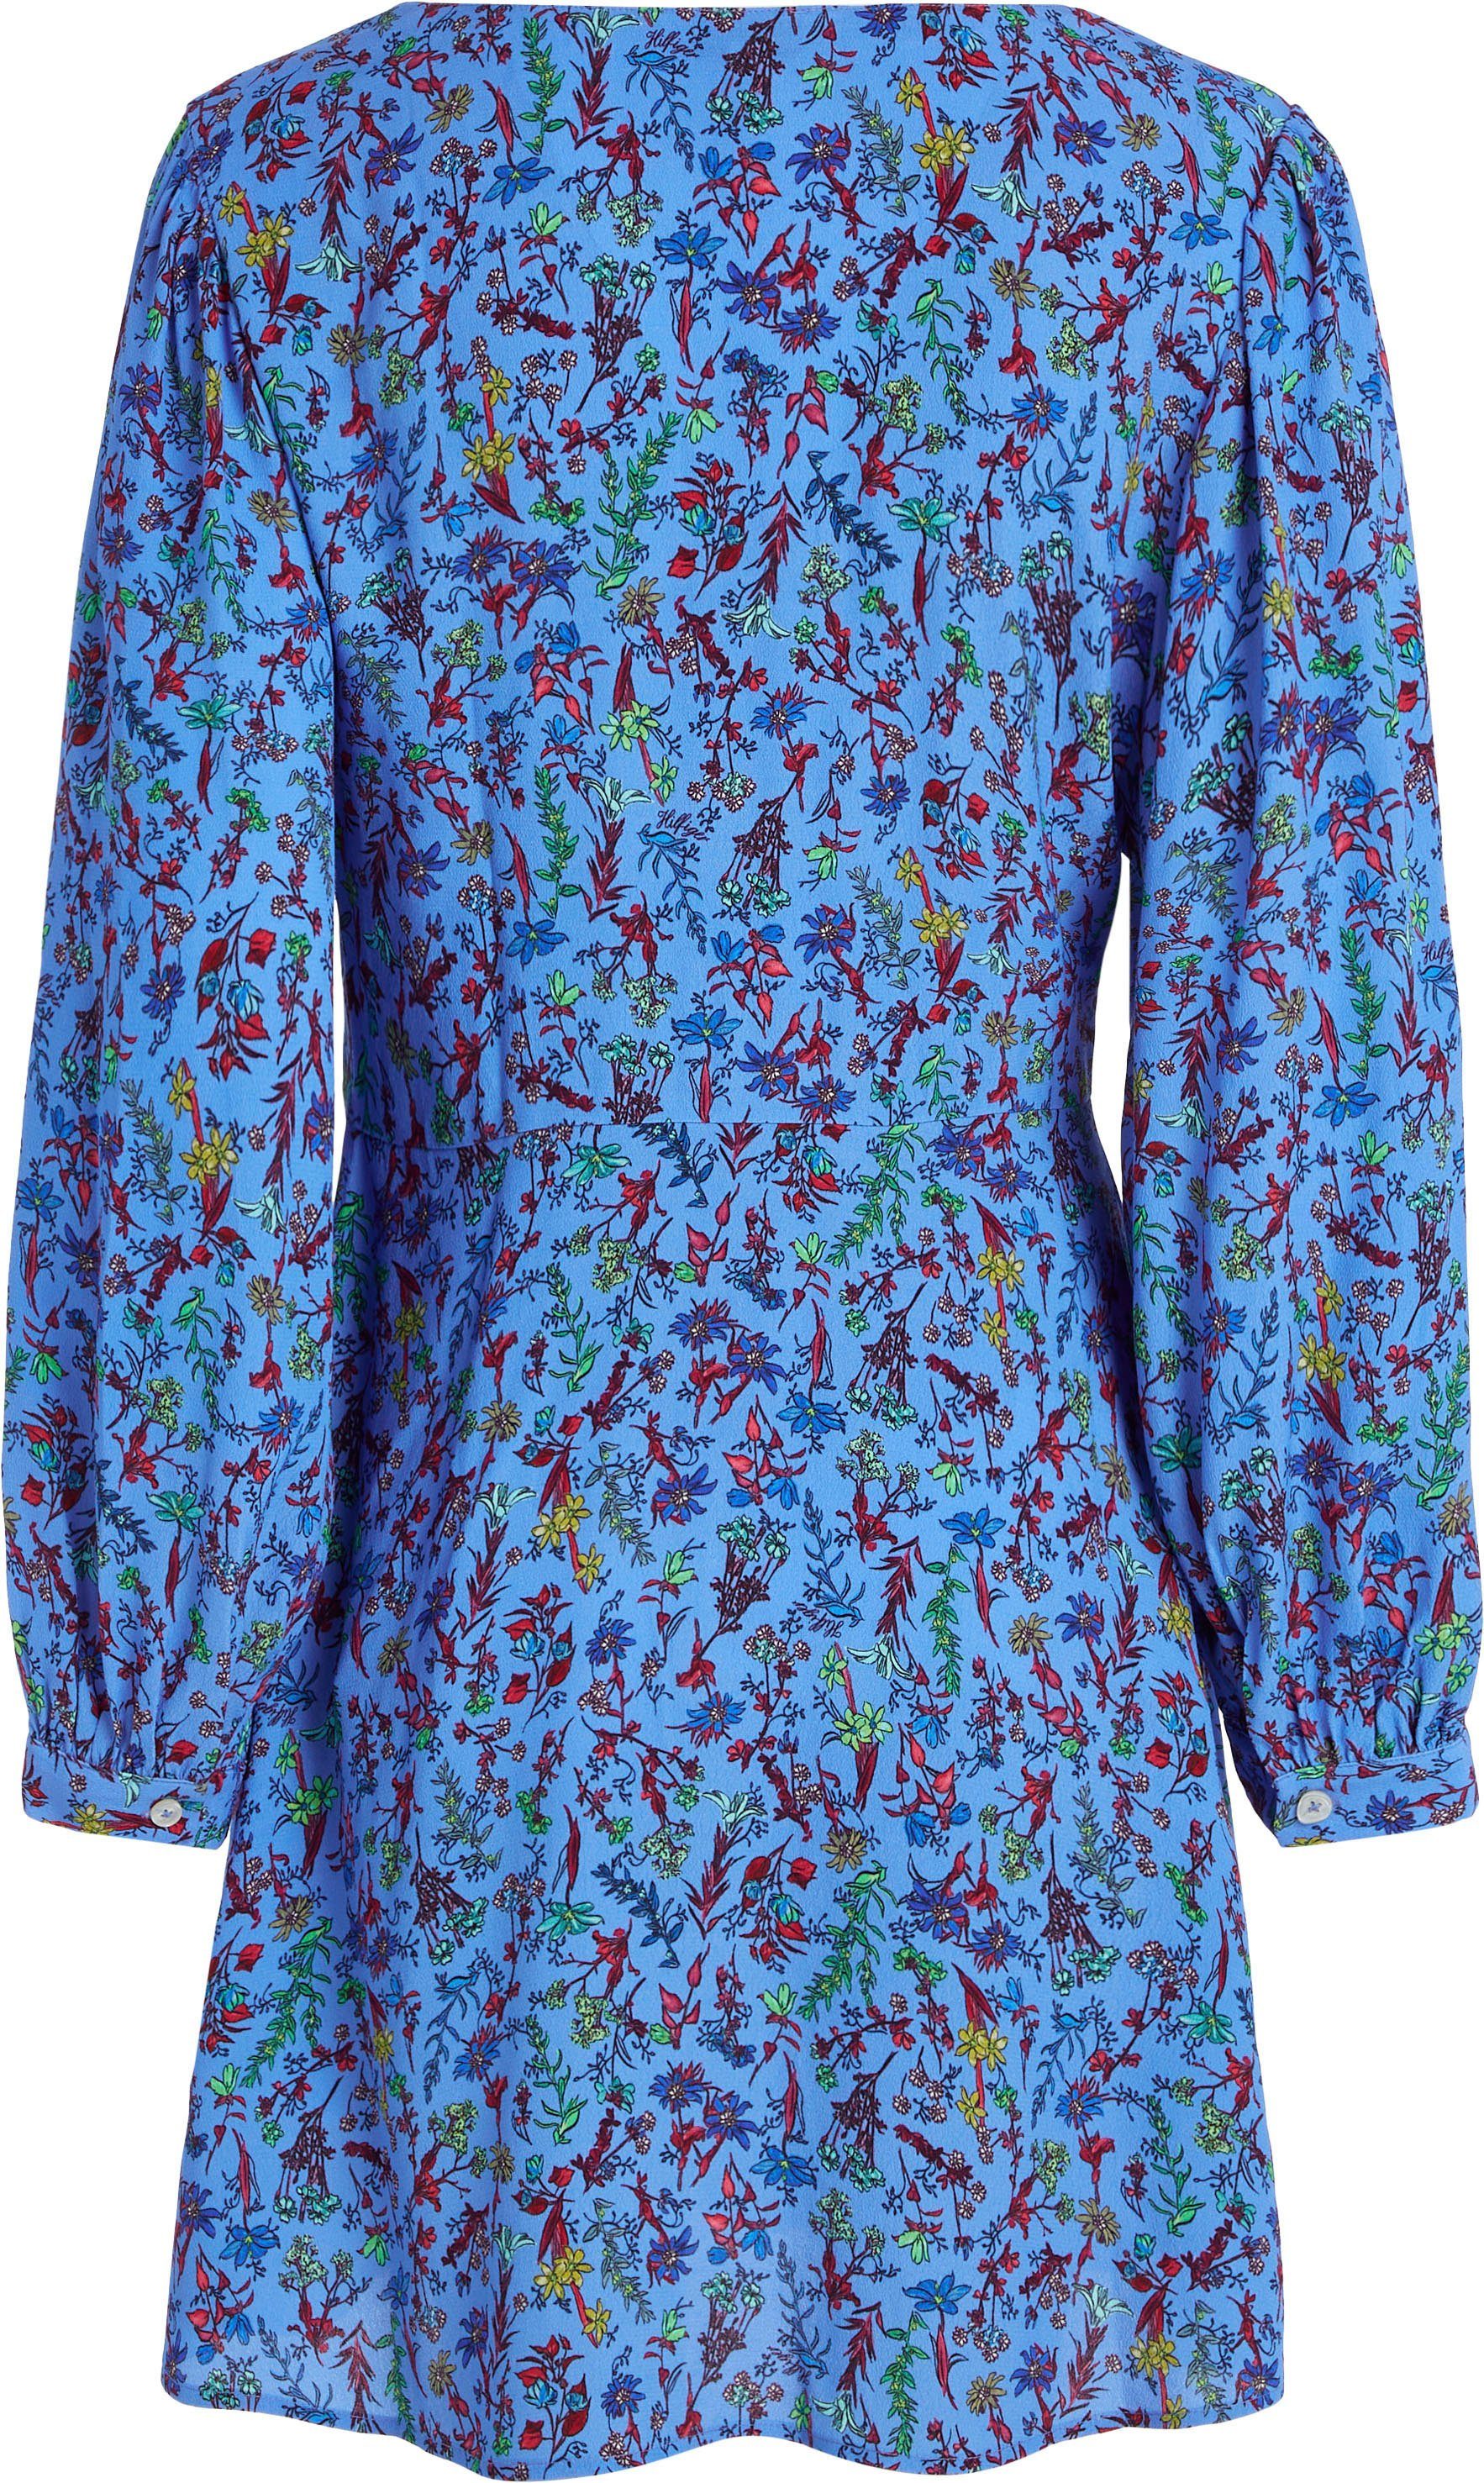 FLORAL Hilfiger VIS LS in farbenfrohem Tommy DRESS Floral-Print Shirtkleid SHORT